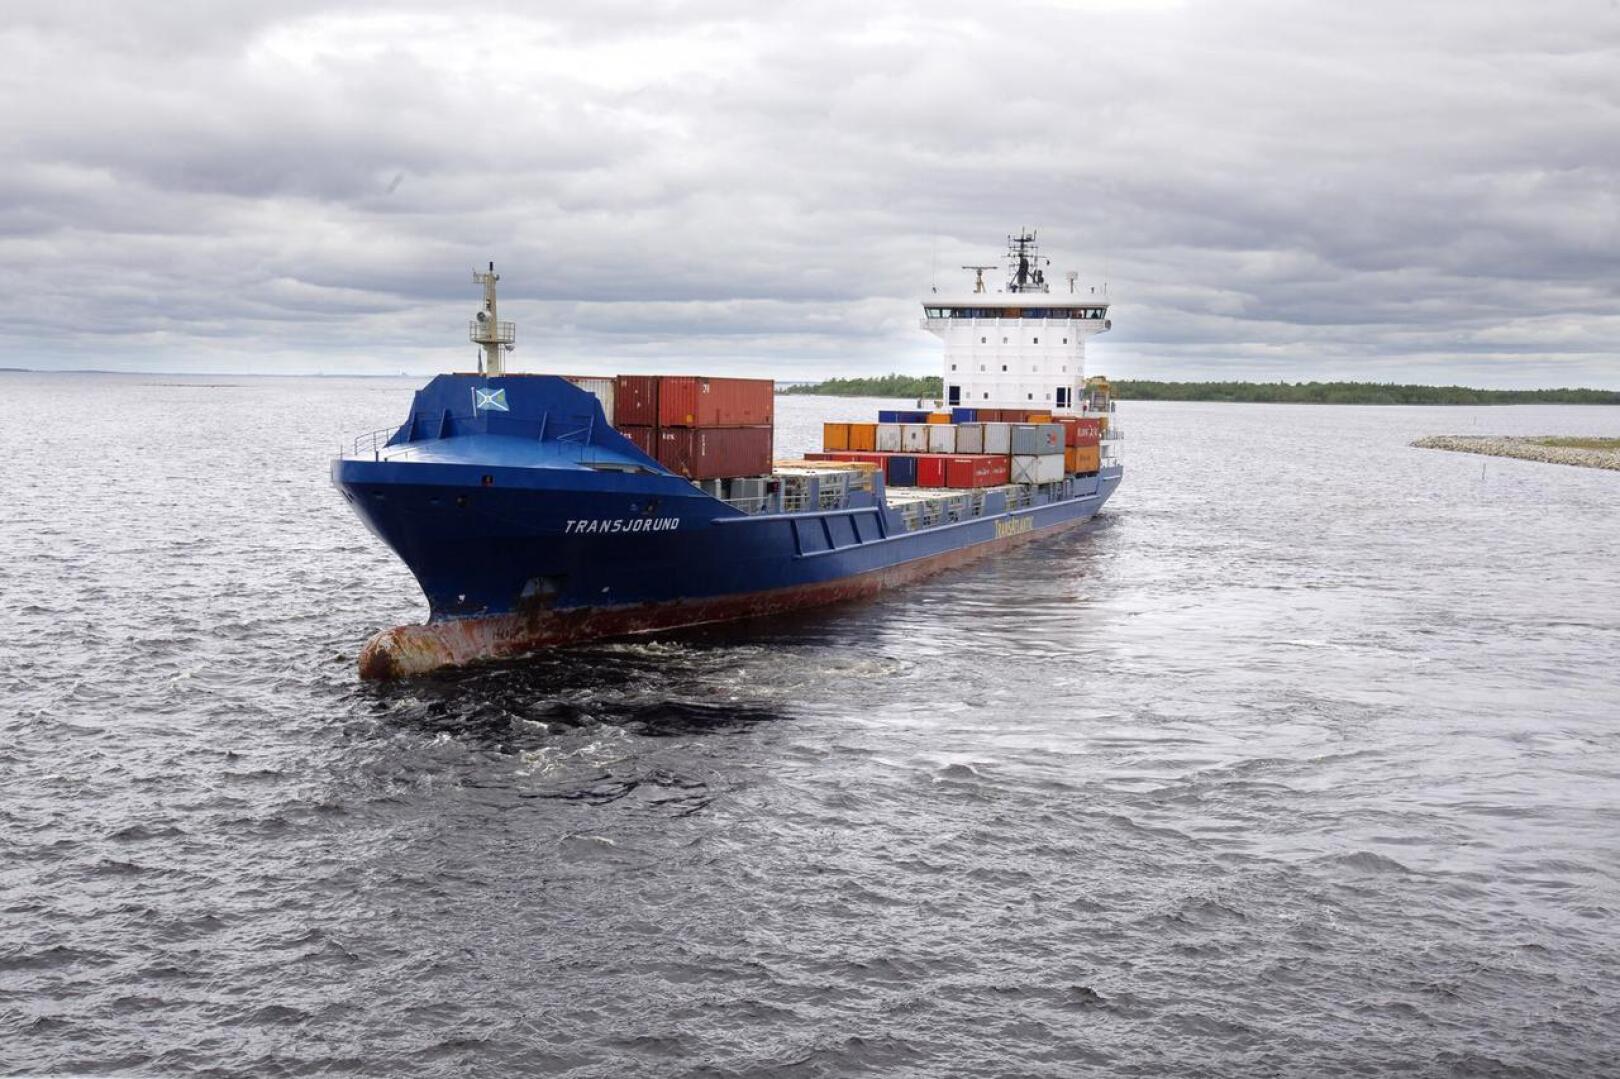 Suomalaisvarustamot keskustelevat gps-aikahypyn riskeistä parin viikon kuluttua. Itämerellä kulkee eri maiden aluksia, ja joissakin laitteistot voivat olla vanhoja.